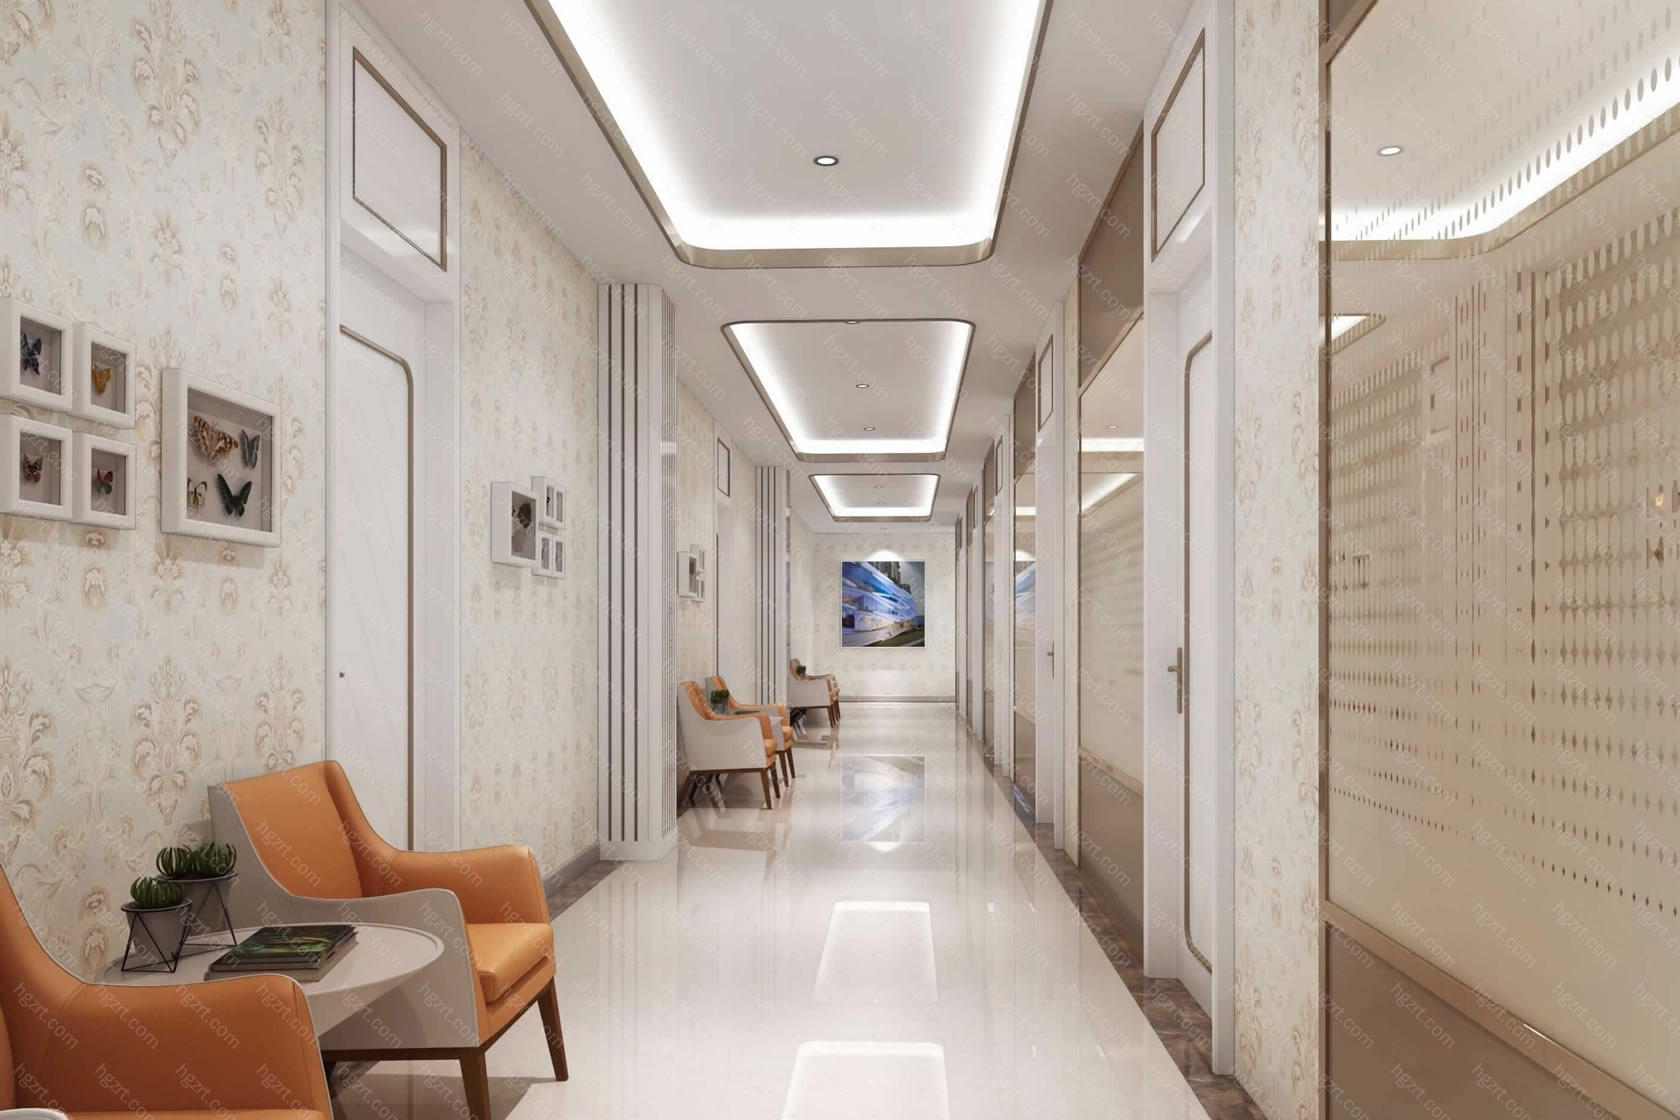 沧州华美整形医院则是在2015年正式选择入驻沧州